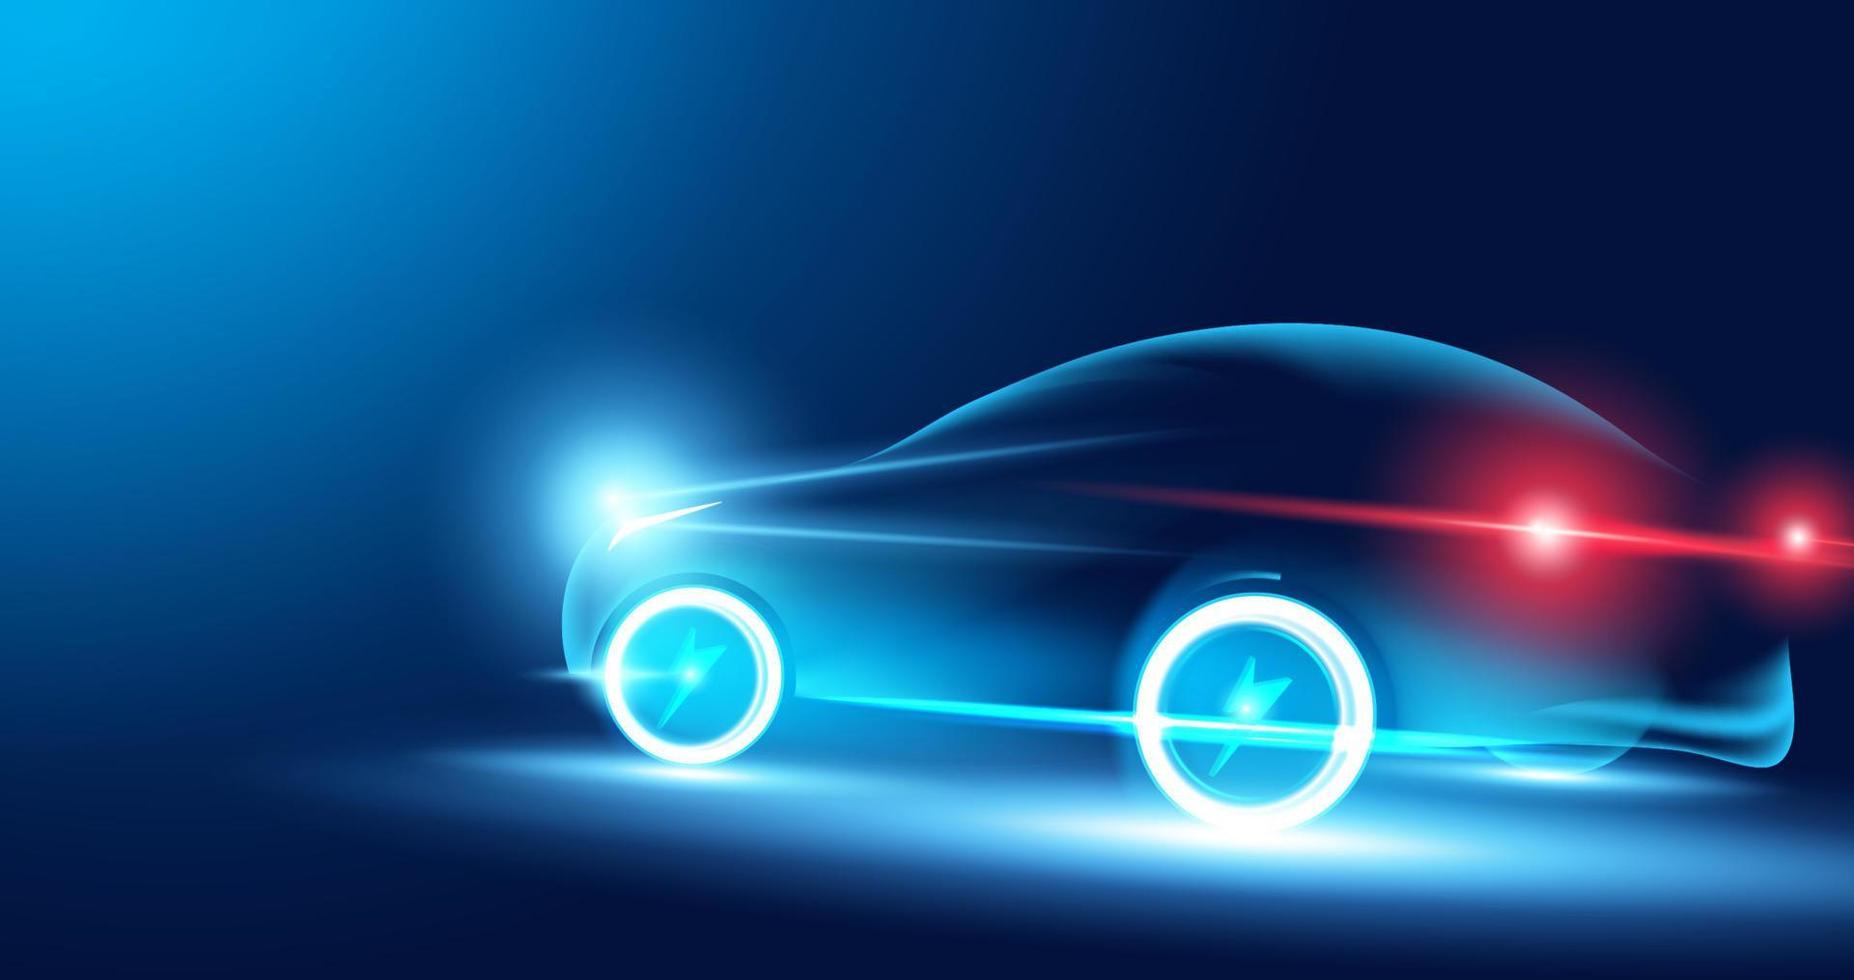 abstracte snelheid elektrische auto's in de afbeelding, elektrische auto's worden aangedreven door elektrische energie. toekomstige energie.op blauwe achtergrond vector